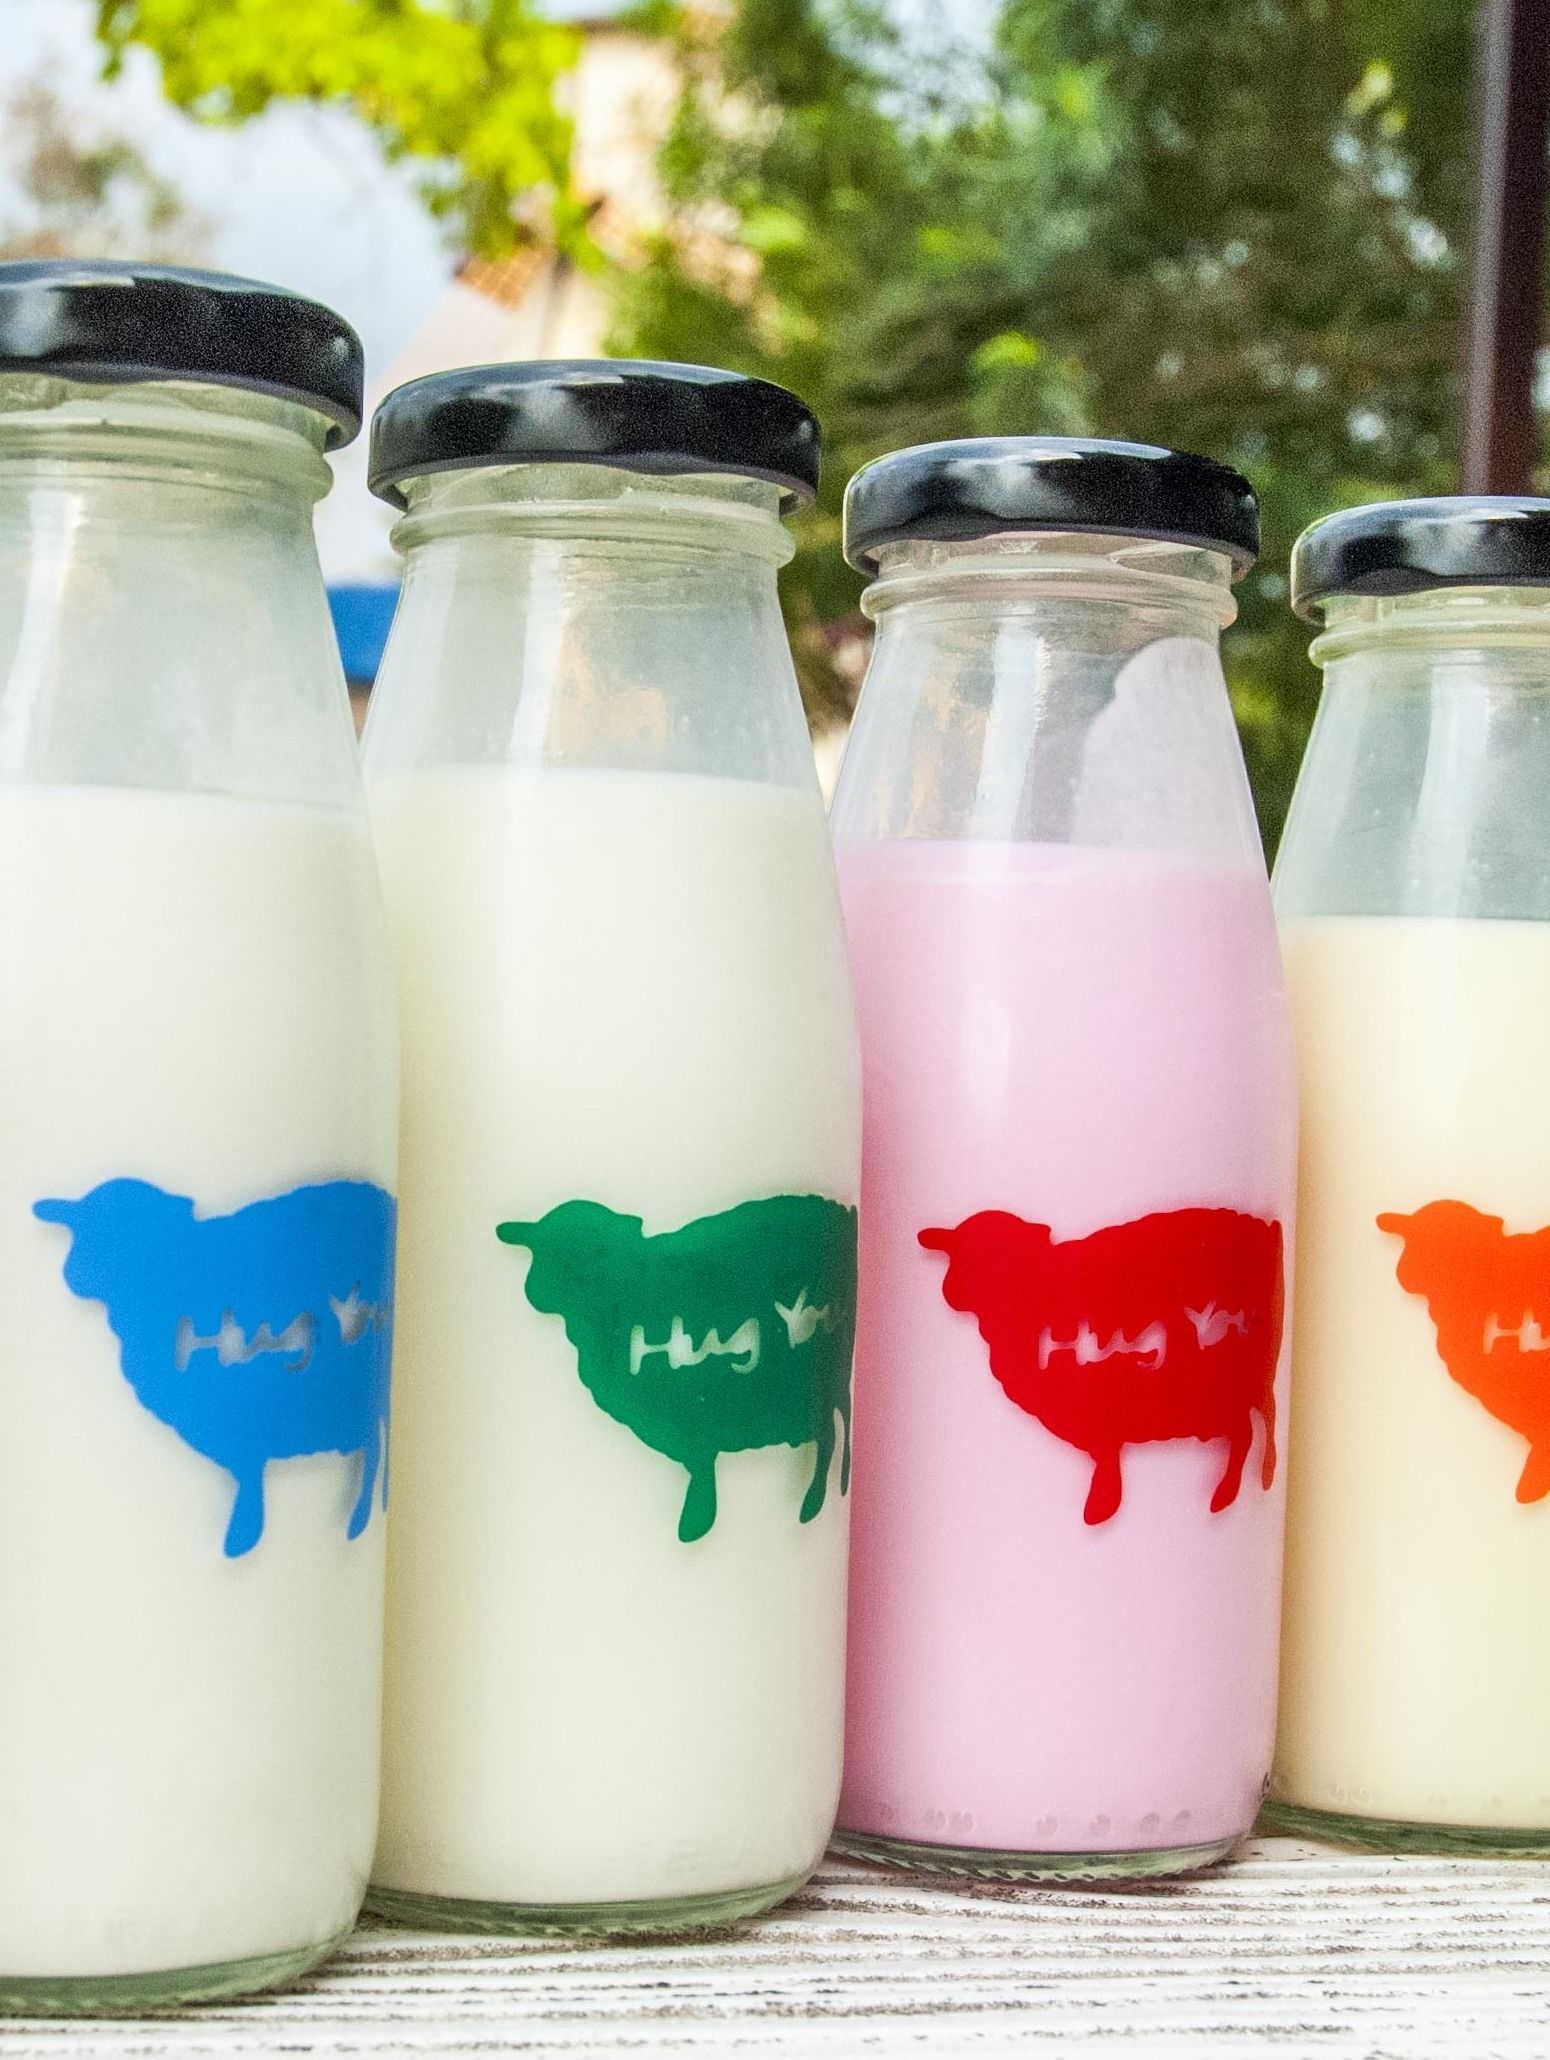 นมแกะหลากรส อร่อยดี มีประโยชน์ ที่ฟาร์มแกะฮักยู จุดแวะ ท่องเที่ยว ลำปาง ภาคเหนือ